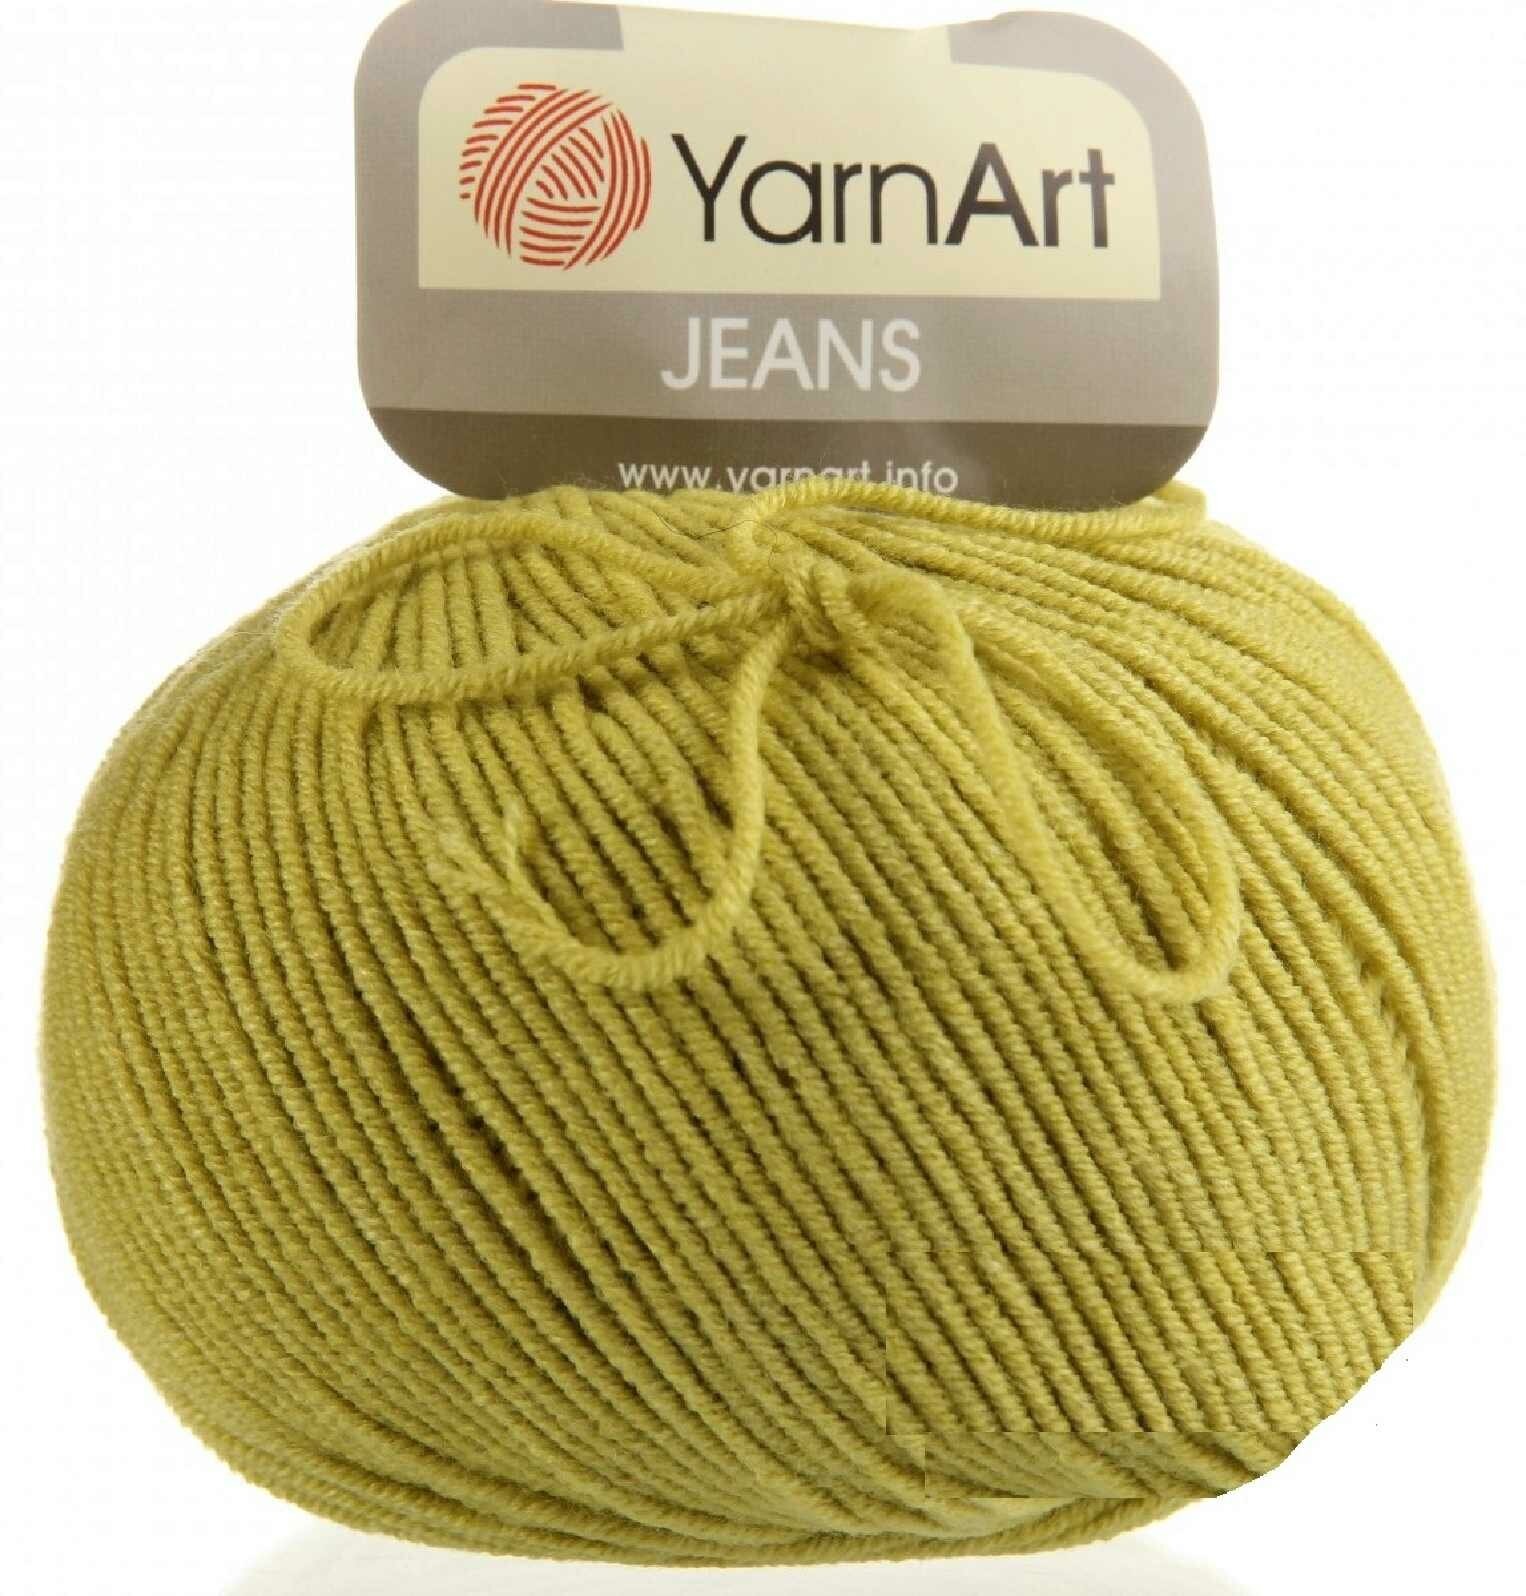  YarnArt Jeans   - (29) 3  50 /160  (45%  55 )